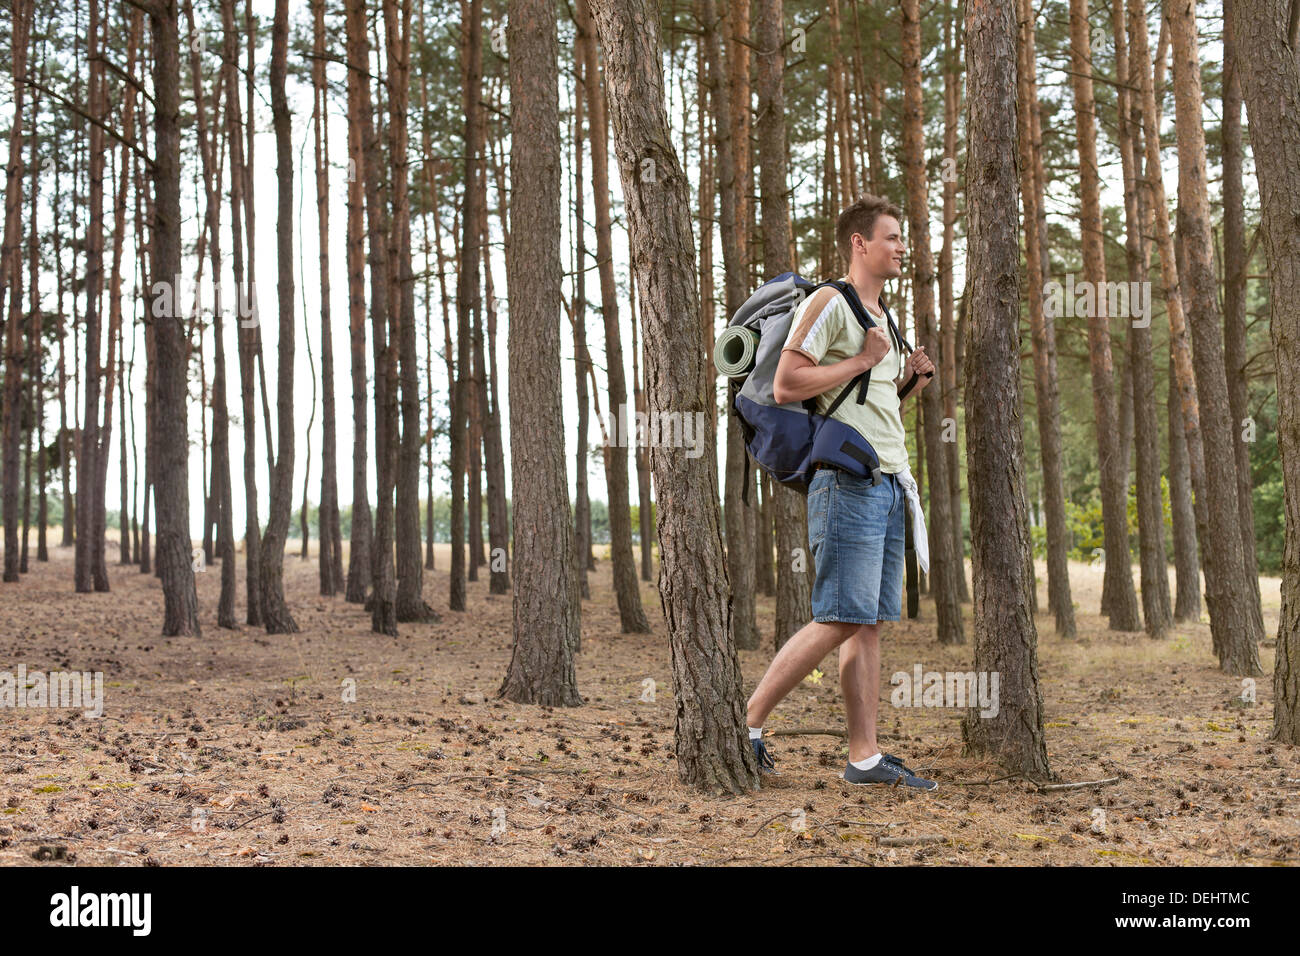 Full length male backpacker trekking forest Stock Photo